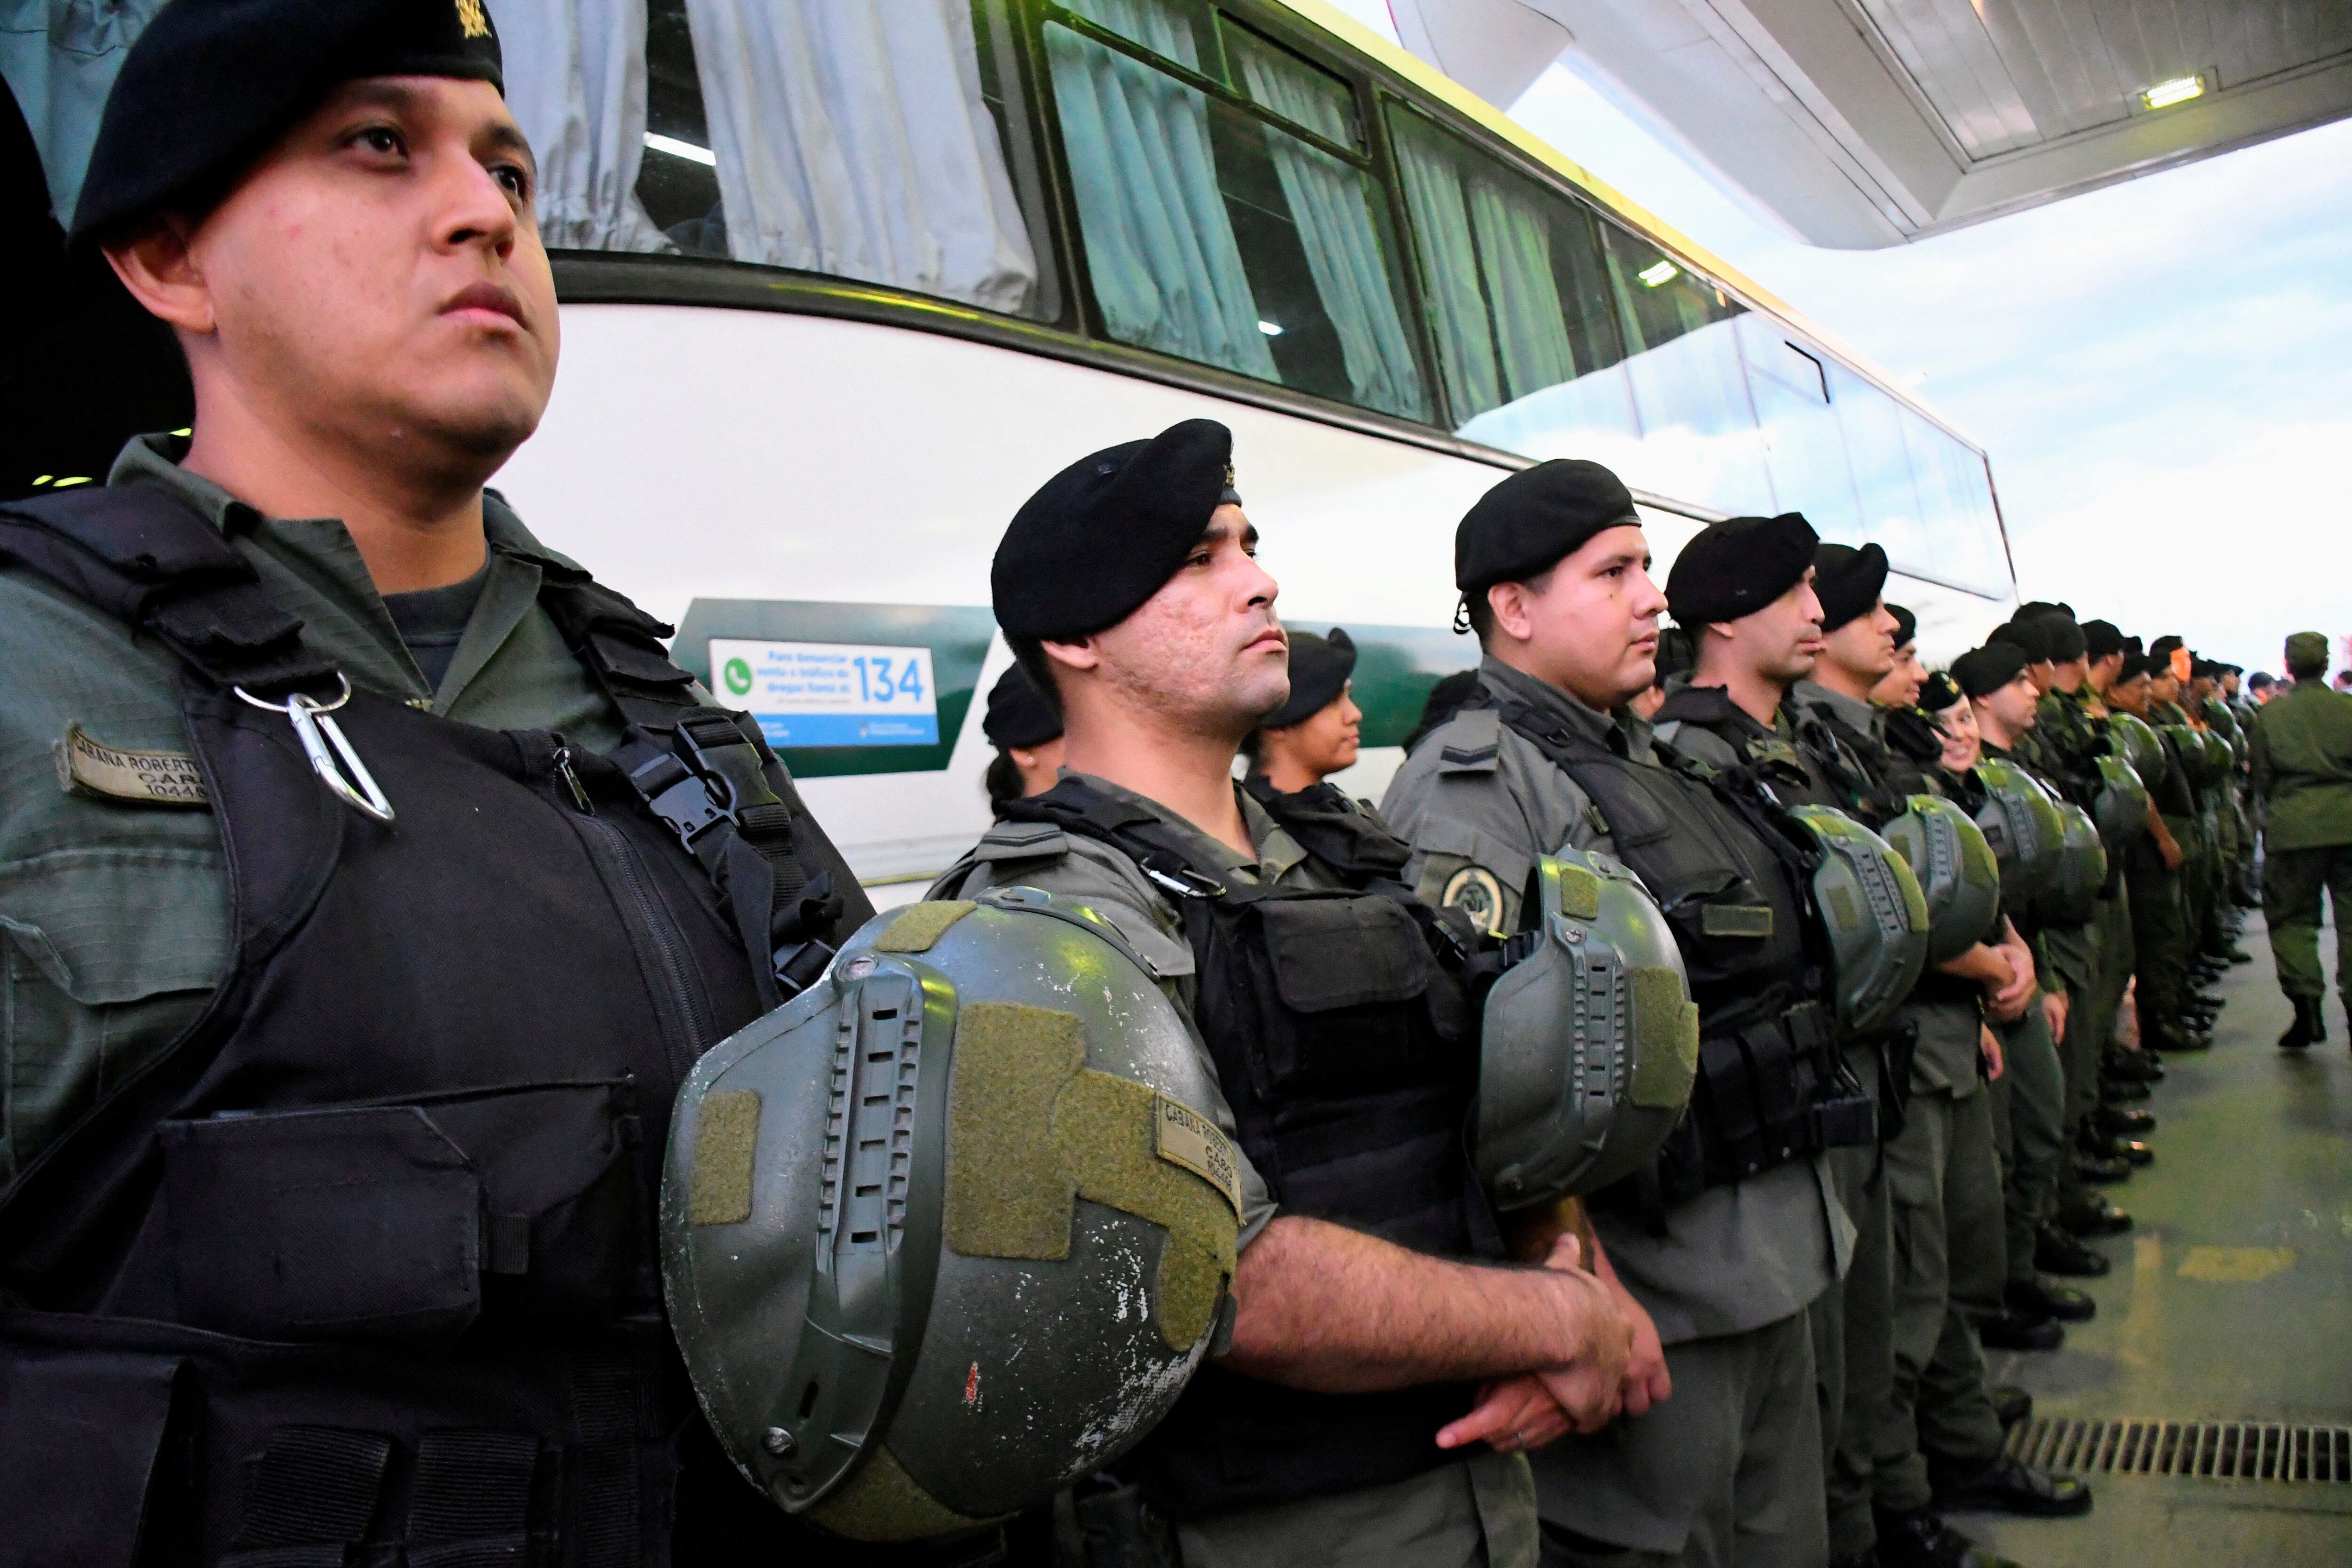 Operativo en Rosario. Efectivos de las fuerzas federales llegan a la ciudad santafesina para comenzar con el operativo